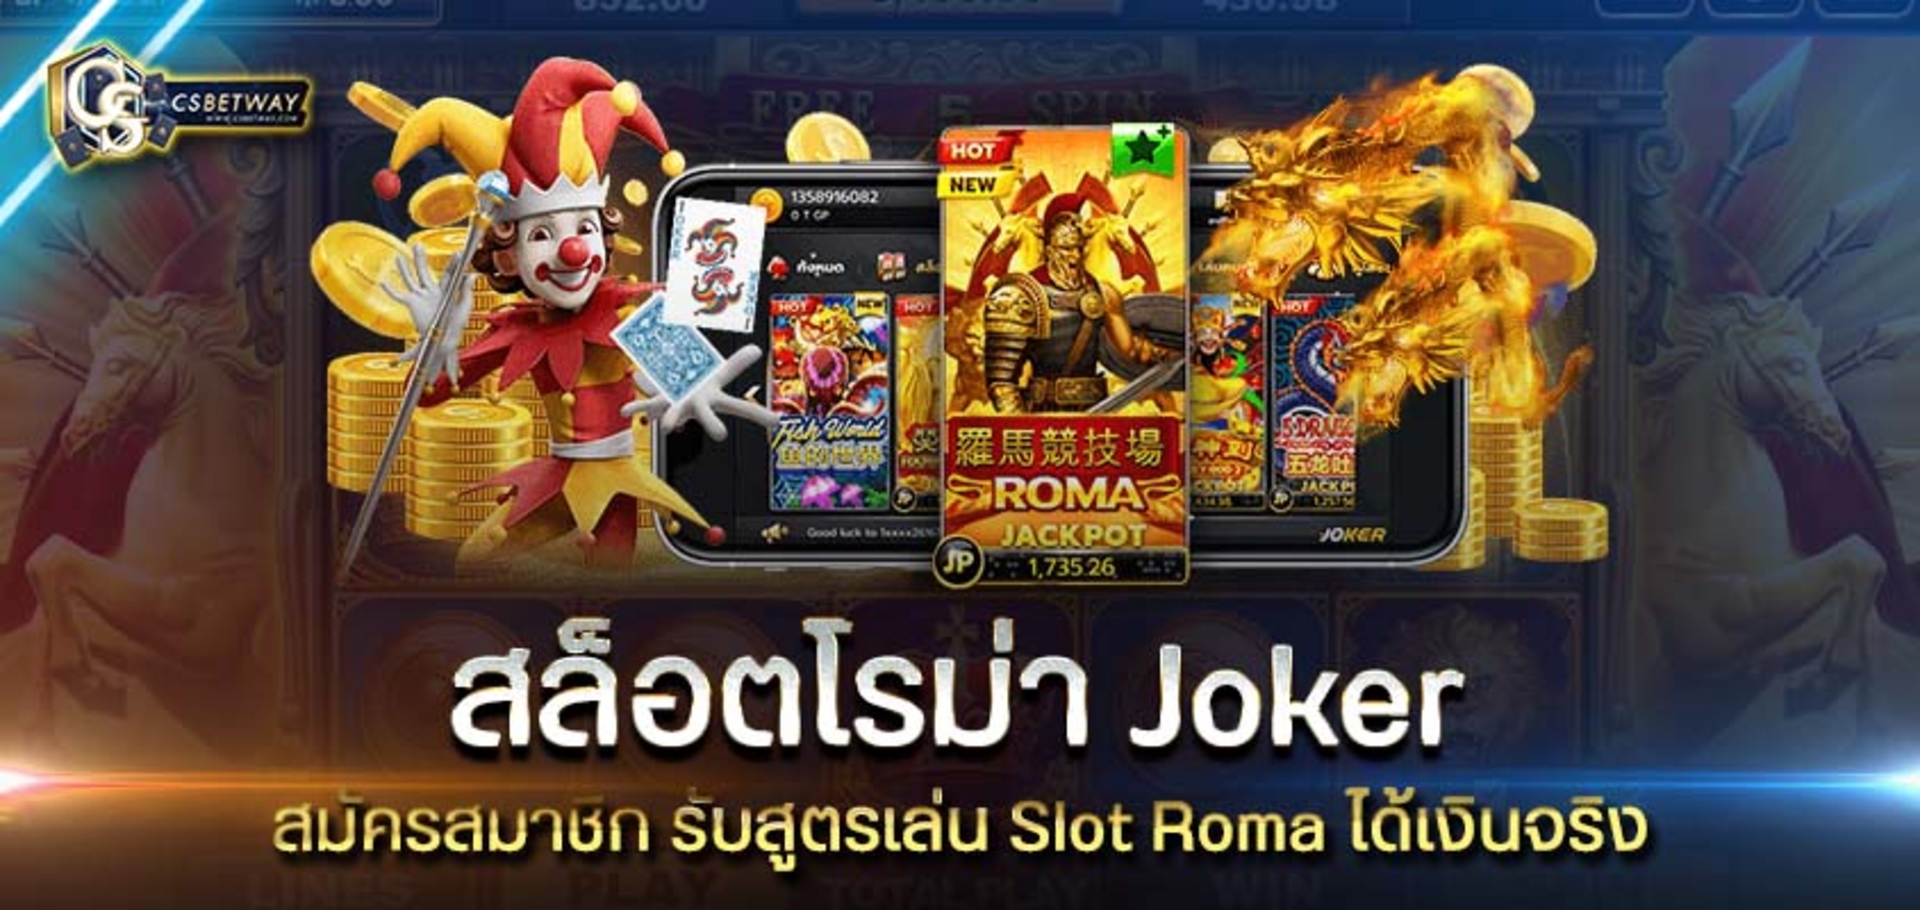 สมัครสมาชิก เว็บสล็อตโรม่า Joker รับสูตรเล่น Slot Roma ได้เงินจริง